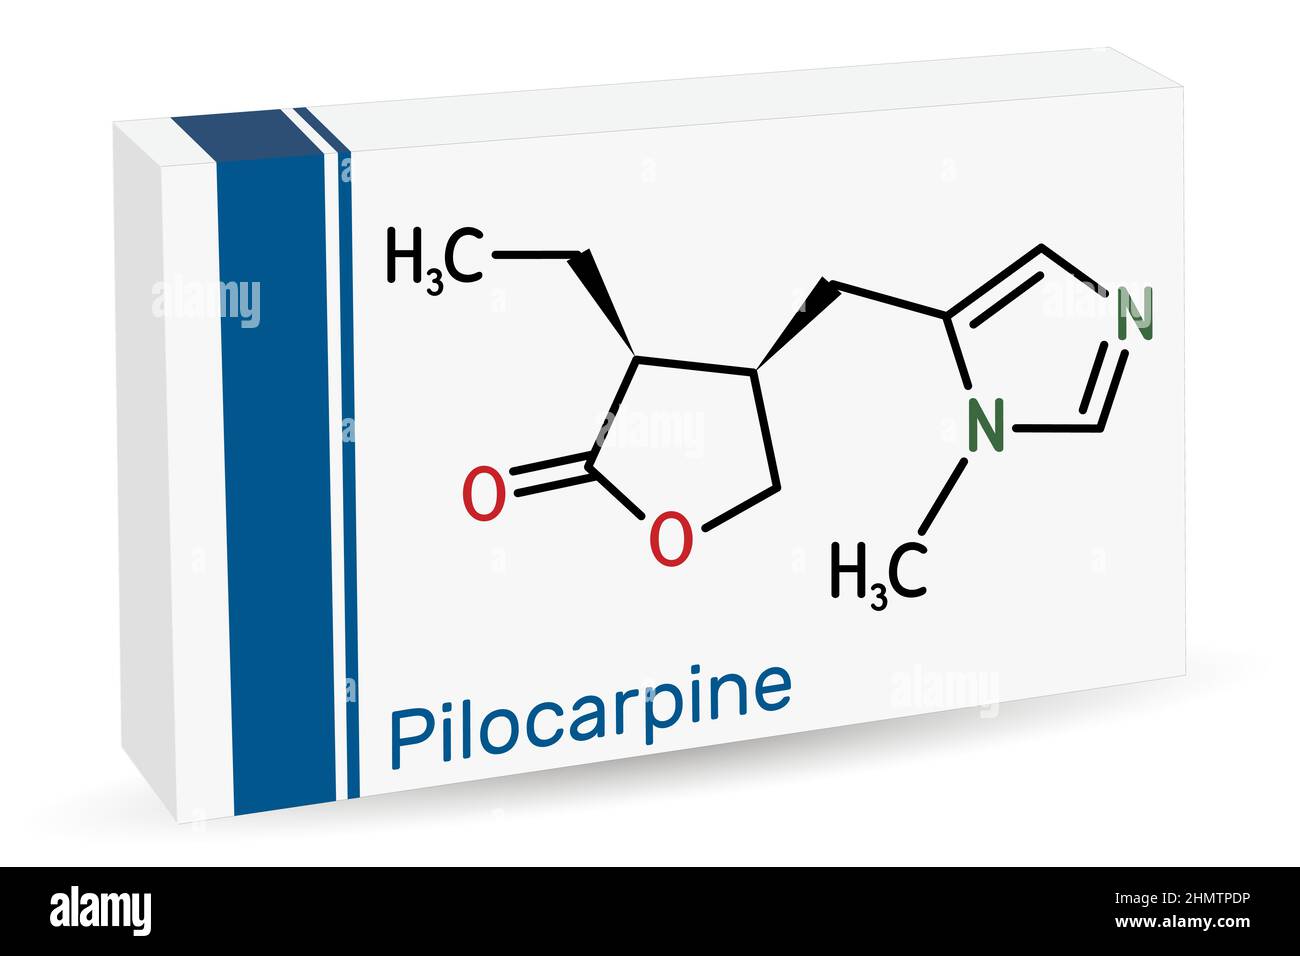 Pilocarpin-Molekül. Es ist ein natürliches Alkaloid, das am Auge zur Behandlung eines erhöhten Augeninnendrucks, Glaukoms, verwendet wird. Chemische Formel des Skeletts. Papierverpackung Stock Vektor